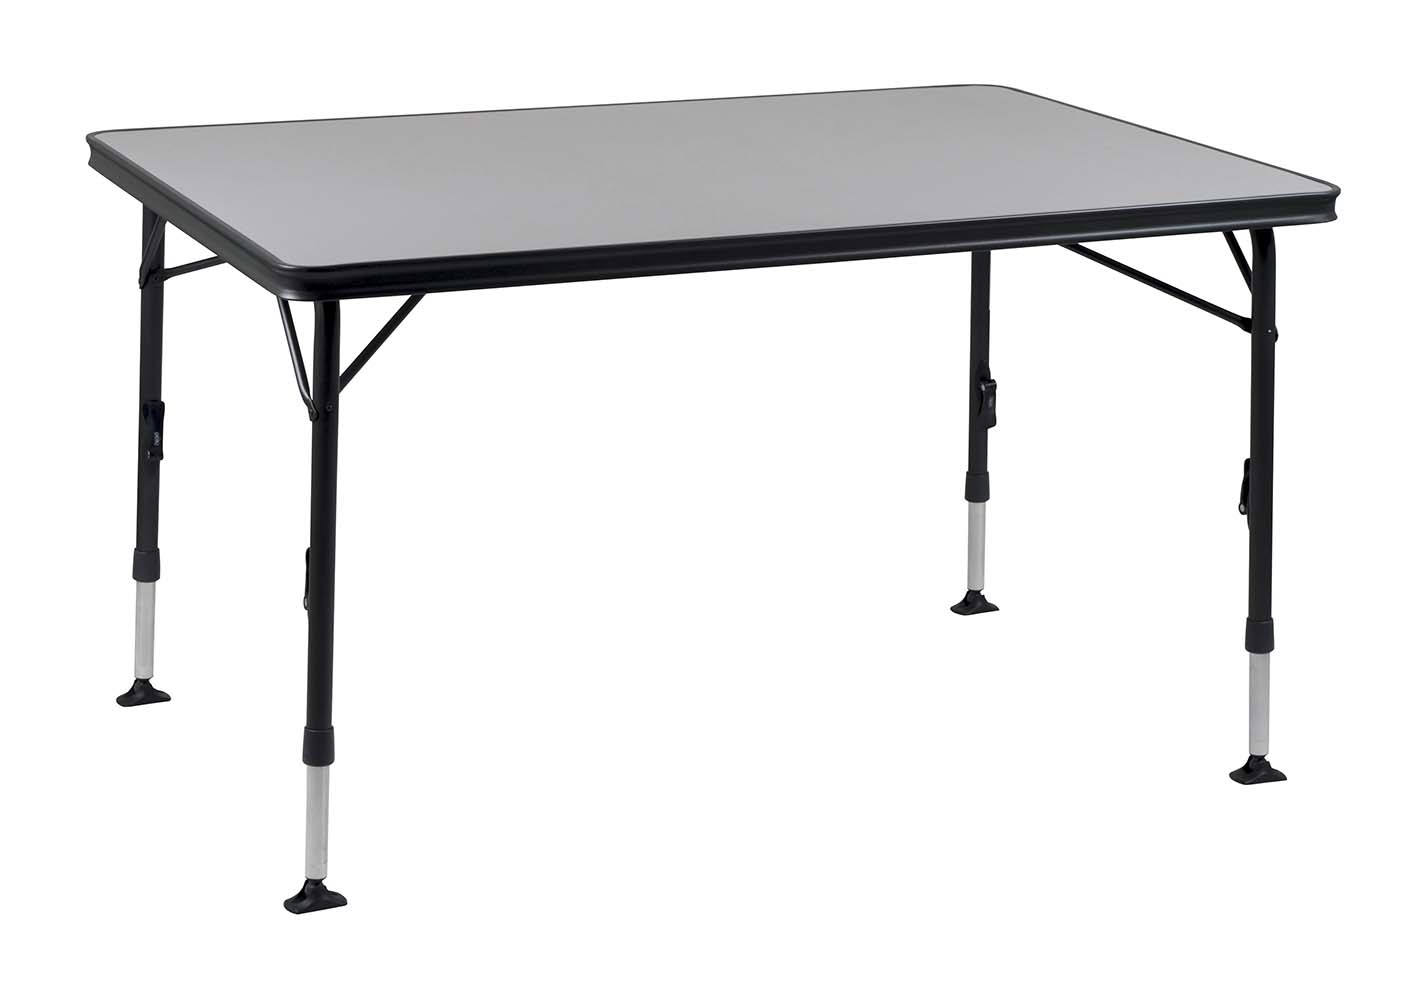 1151410 Ein sehr stabiler Tisch dank hoher Qualität. Durch seine einzigartige Konstruktion ist dieser Tisch einfach auf- und zuzuklappen. Die Beine sind nach dem Einklappen sicher in den Aluminiumschienen an der Unterseite der Tischplatte zu befestigen, die wiederum für eine zusätzliche Verstärkung sorgen.  Die sehr große Tischplatte kann bis zu 6 Personen beherbergen. Dank hochwertiger Materialien und der hitzebeständigen und wasserfesten Tischplatte, wird eine lange Lebensdauer gewährleistet. Die Beine sorgen für hohe Stabilität durch die dicken und extra verstärkten Rohre. Die Stabilisierungsfüße sorgen für zusätzlichen Halt auf jeder Oberfläche. Dieser Tisch ist durch den Alu-Rahmen leichtgewichtig und leicht zu transportieren.